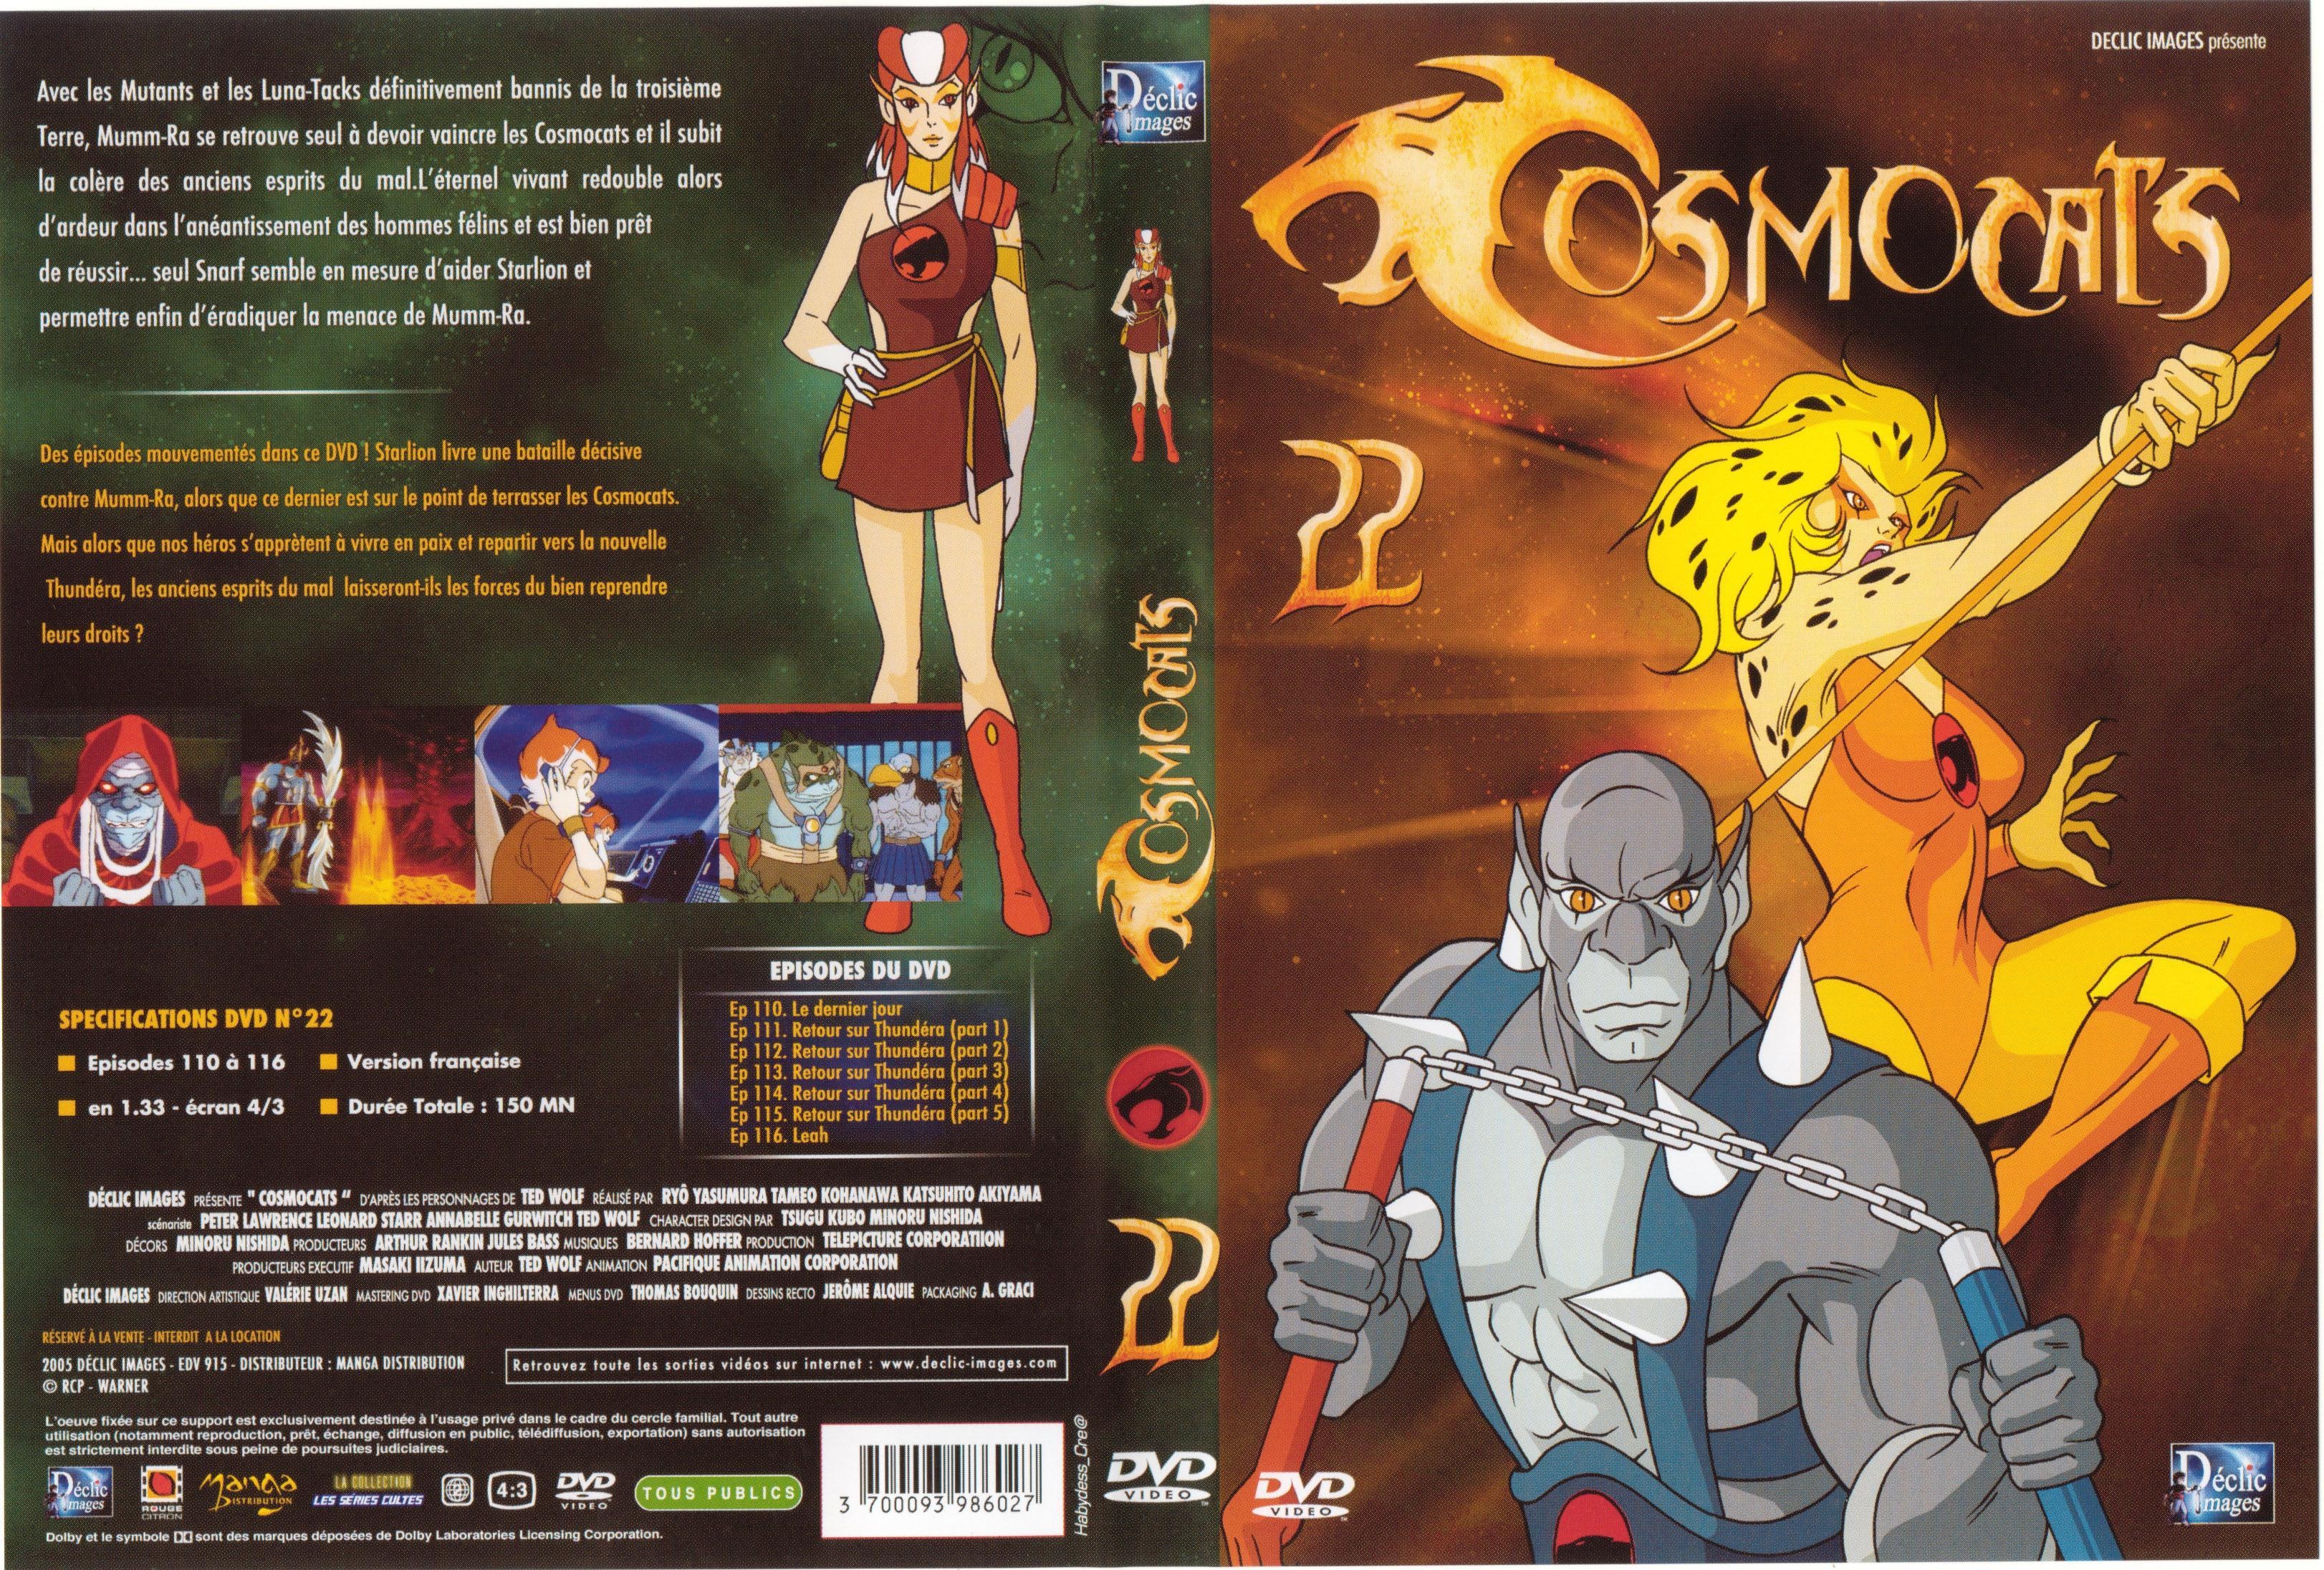 Jaquette DVD Cosmocats vol 22